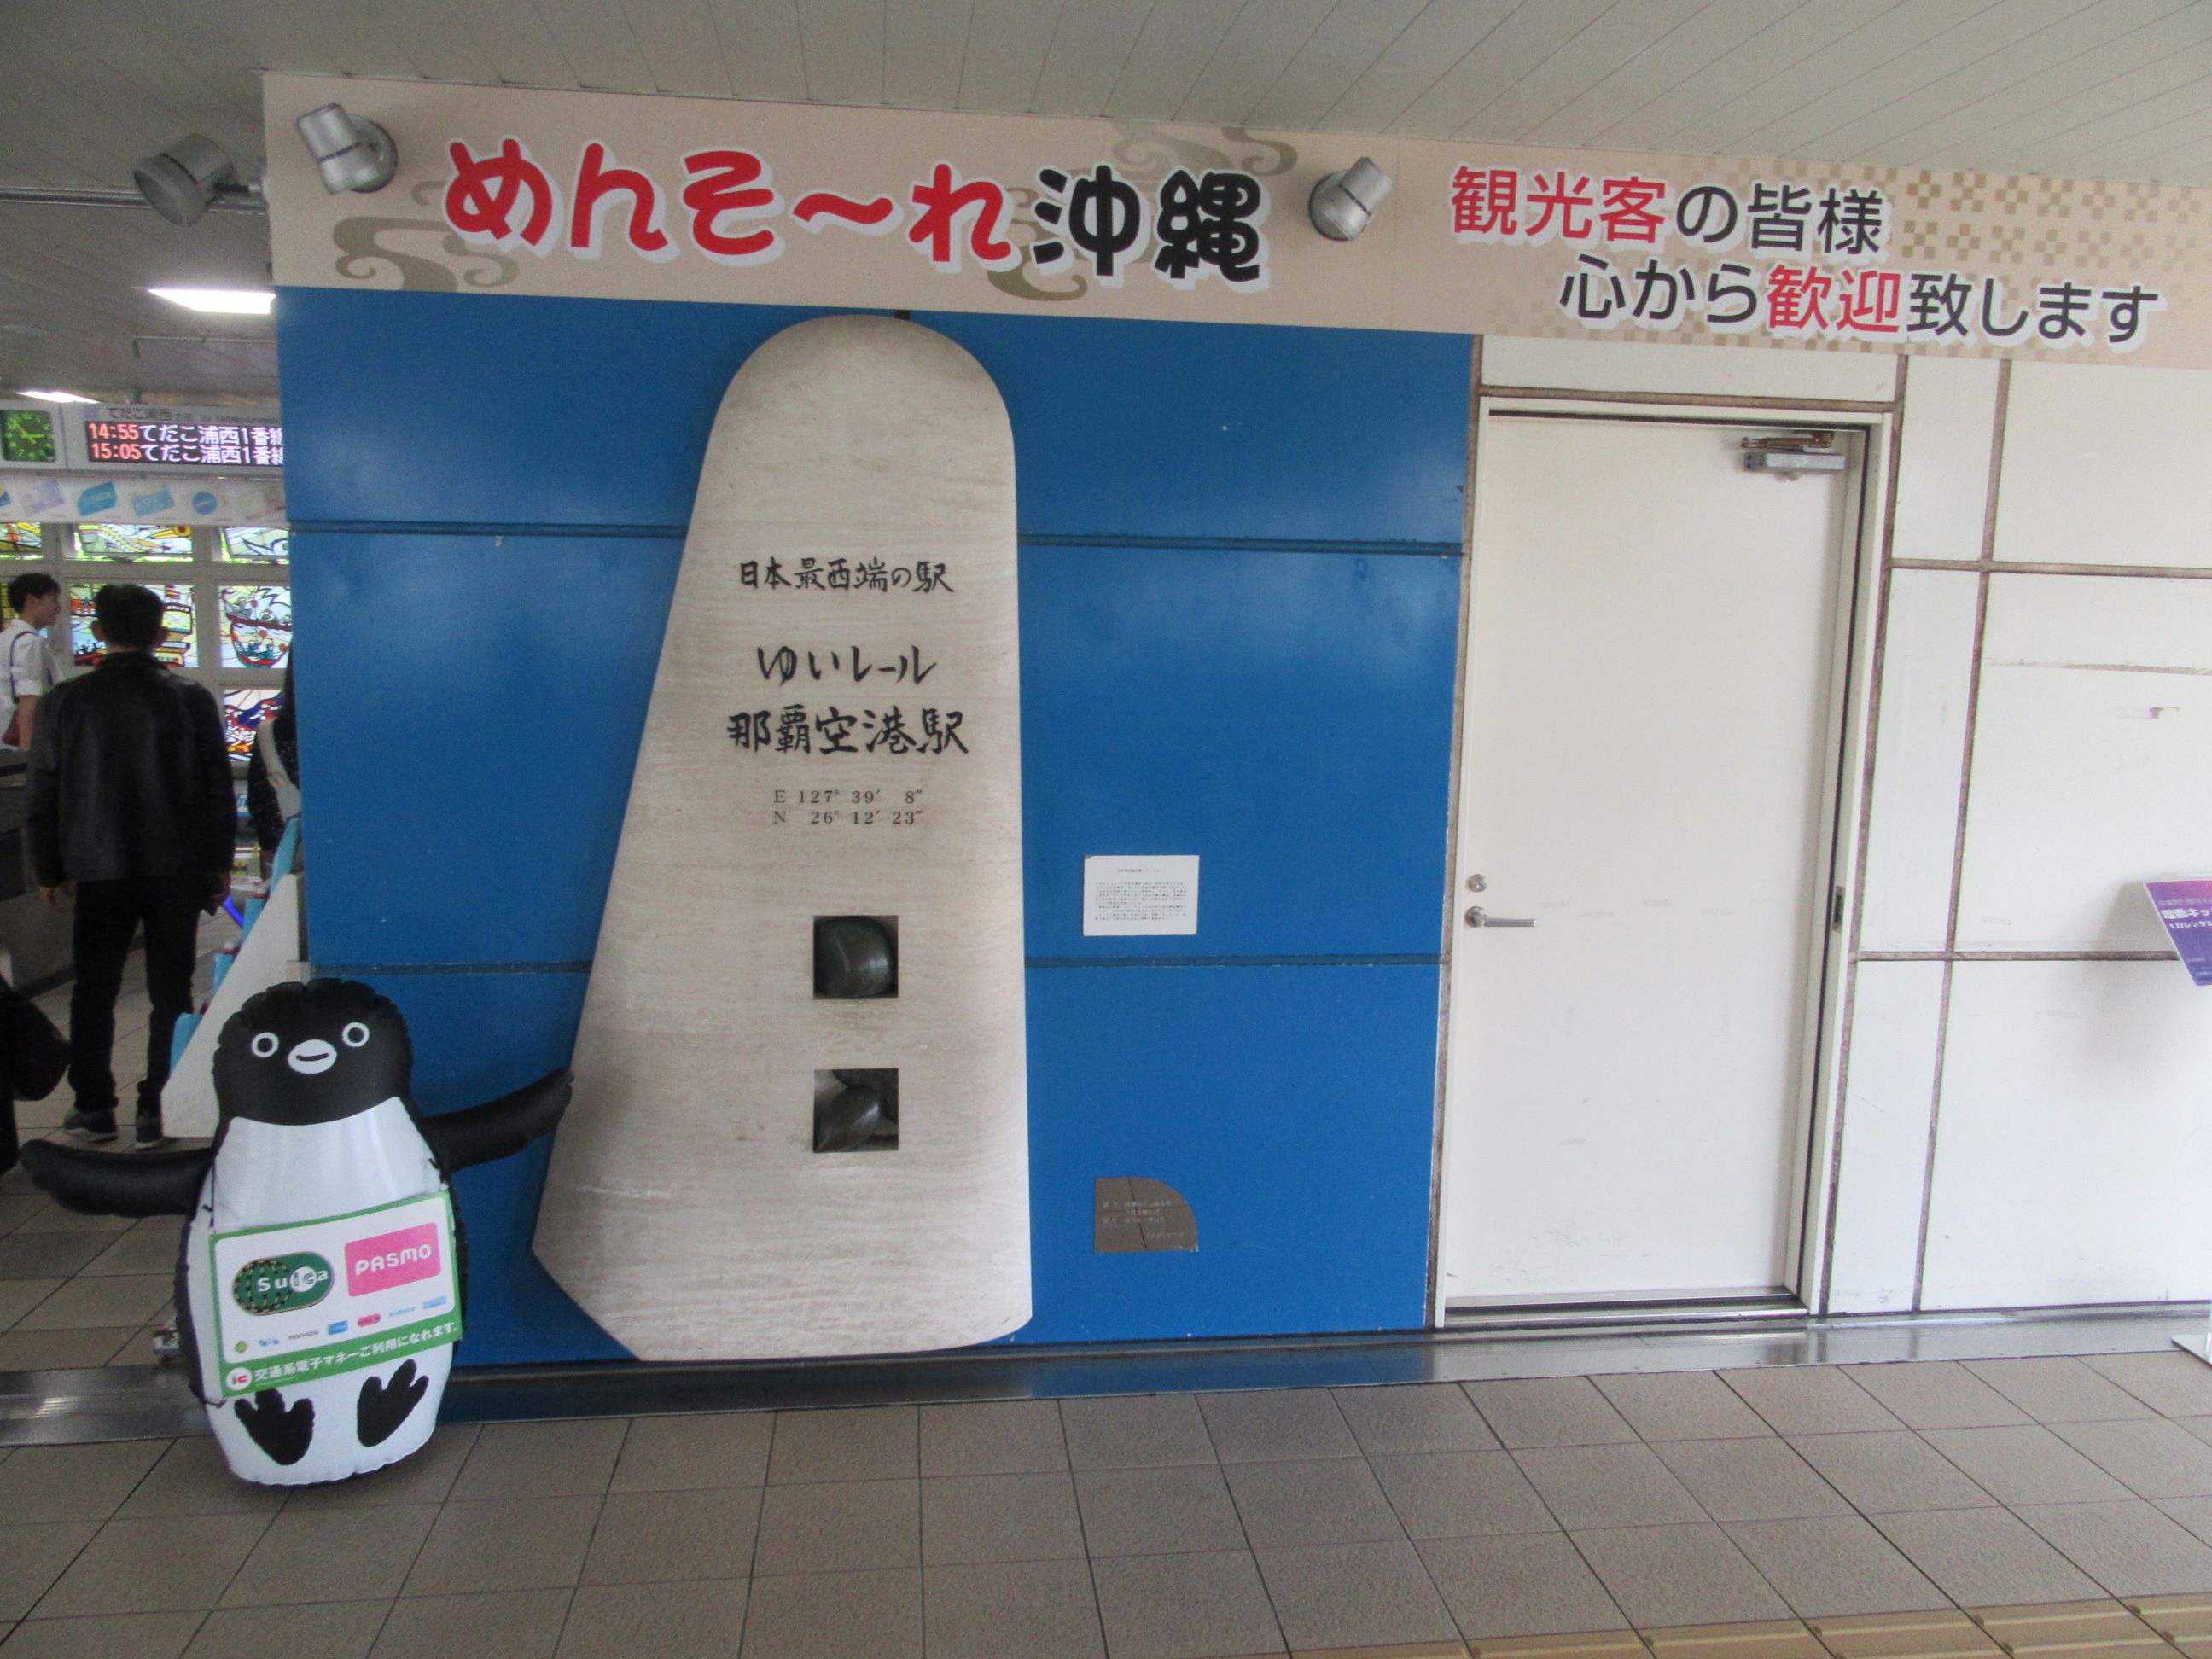 日本最西端の駅であるゆいレール那覇空港駅の記念碑。